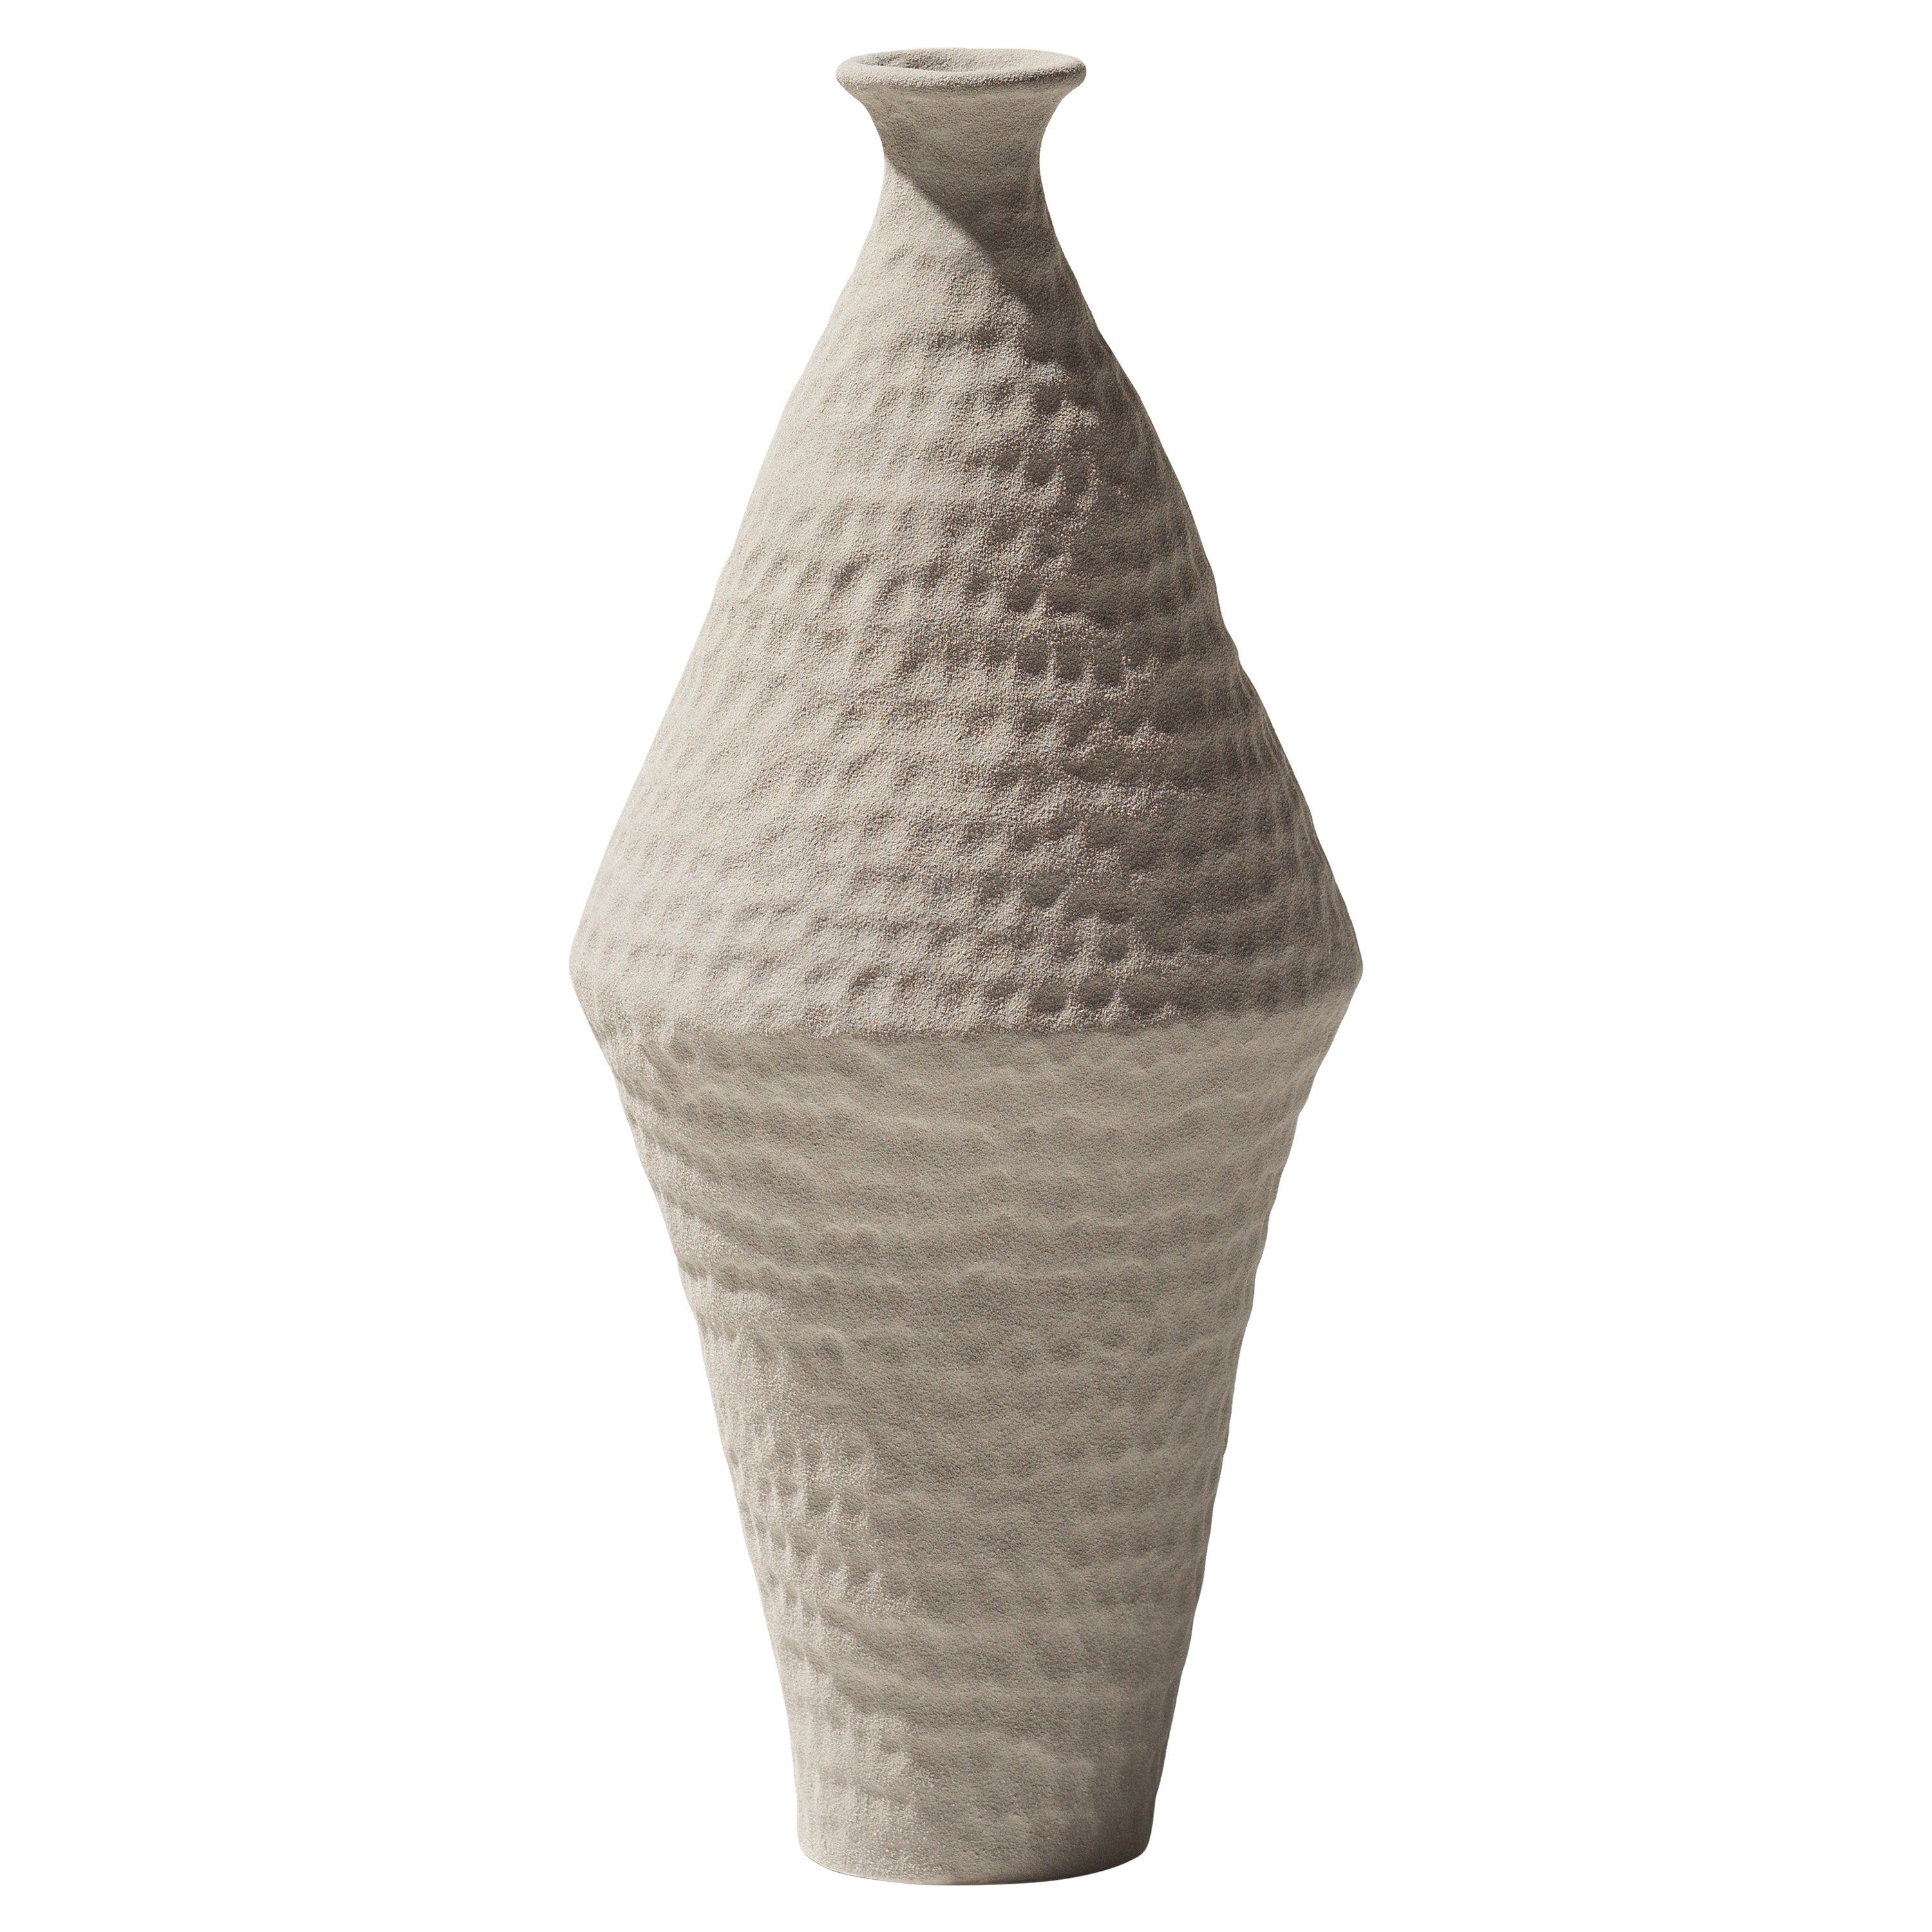 Hellgraue, matte Vase des 21. Jahrhunderts von Ceramica Gatti, Designer A. Anastasio